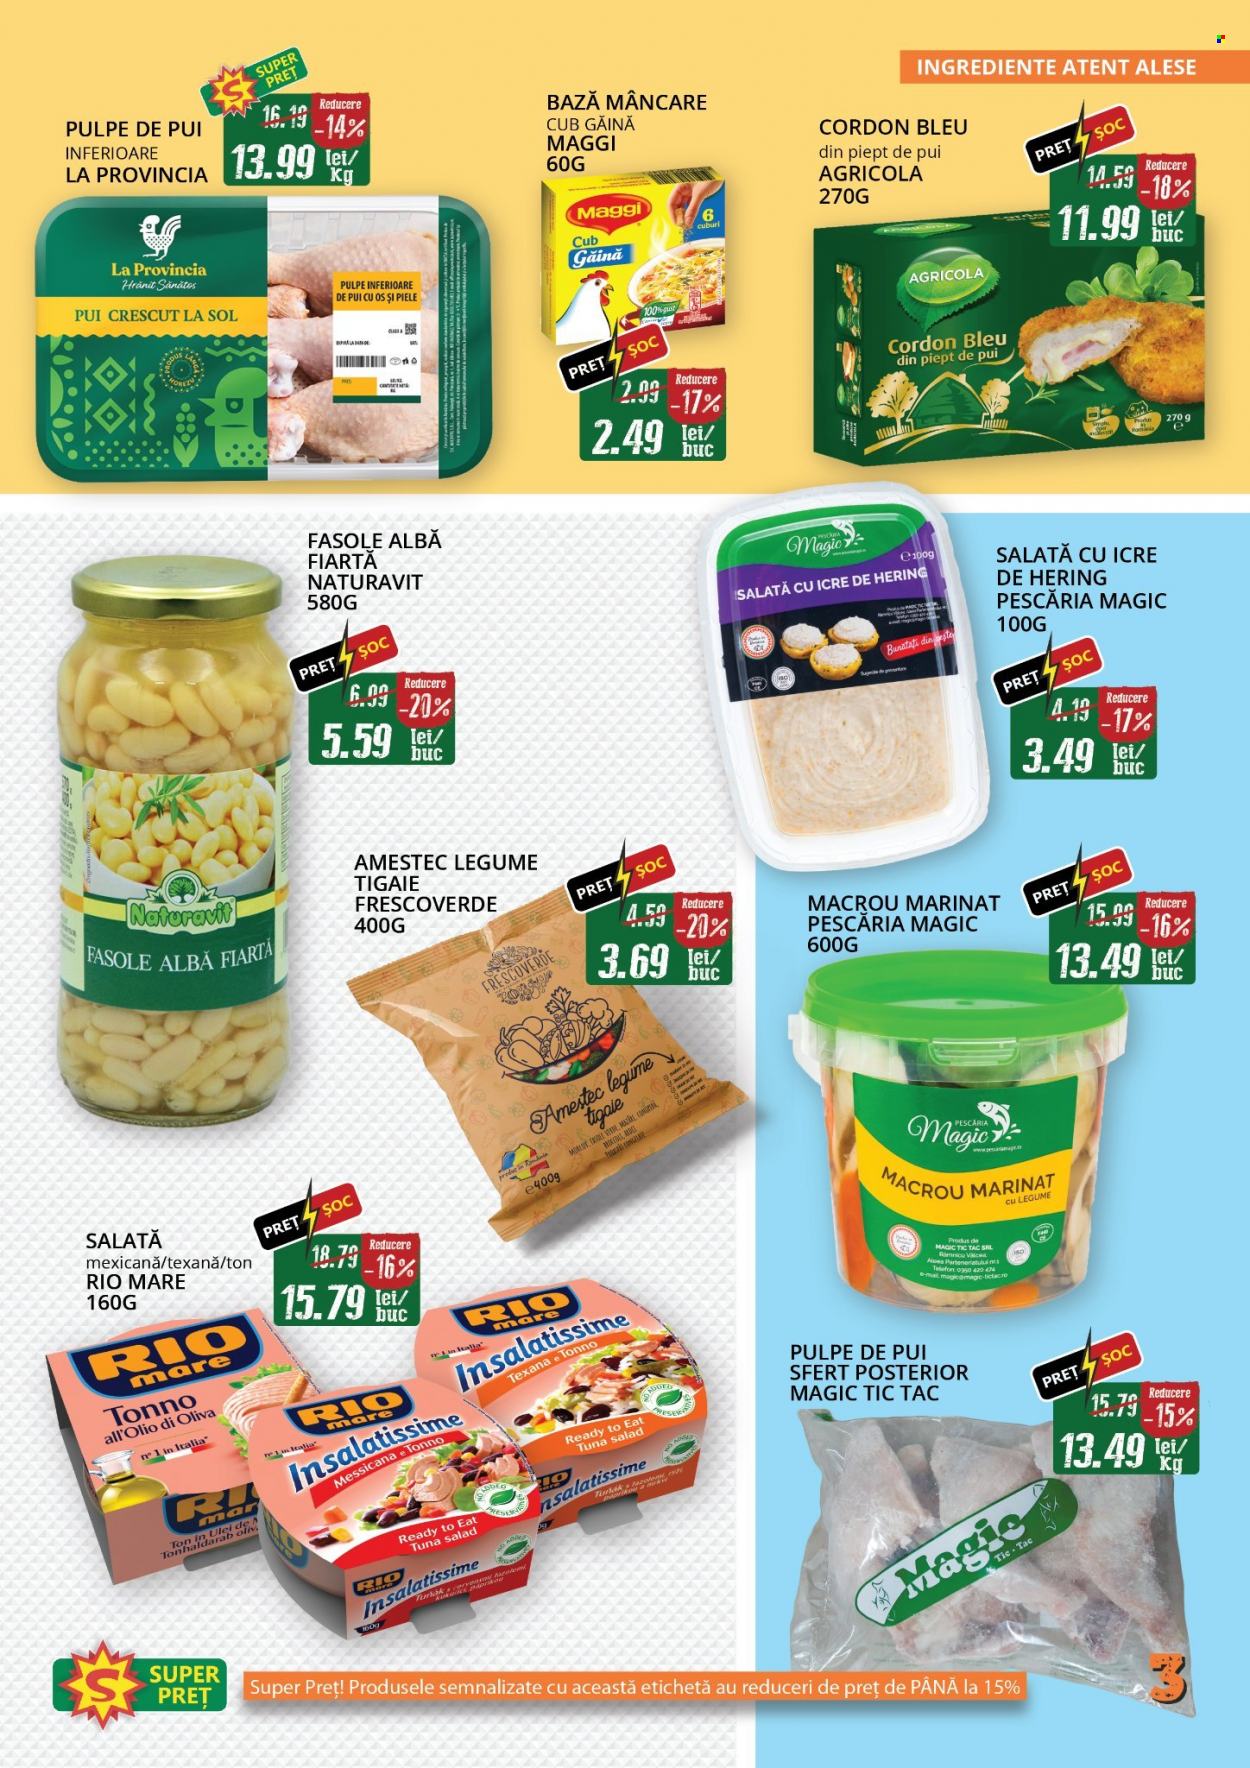 thumbnail - Cataloage Diana supermarket - 01.06.2022 - 30.06.2022 - Produse în vânzare - pulpe de pui, pulpe inferioare de pui, salată cu icre, amestec de legume, mazăre, Maggi, fasole, fasole albă. Pagina 3.